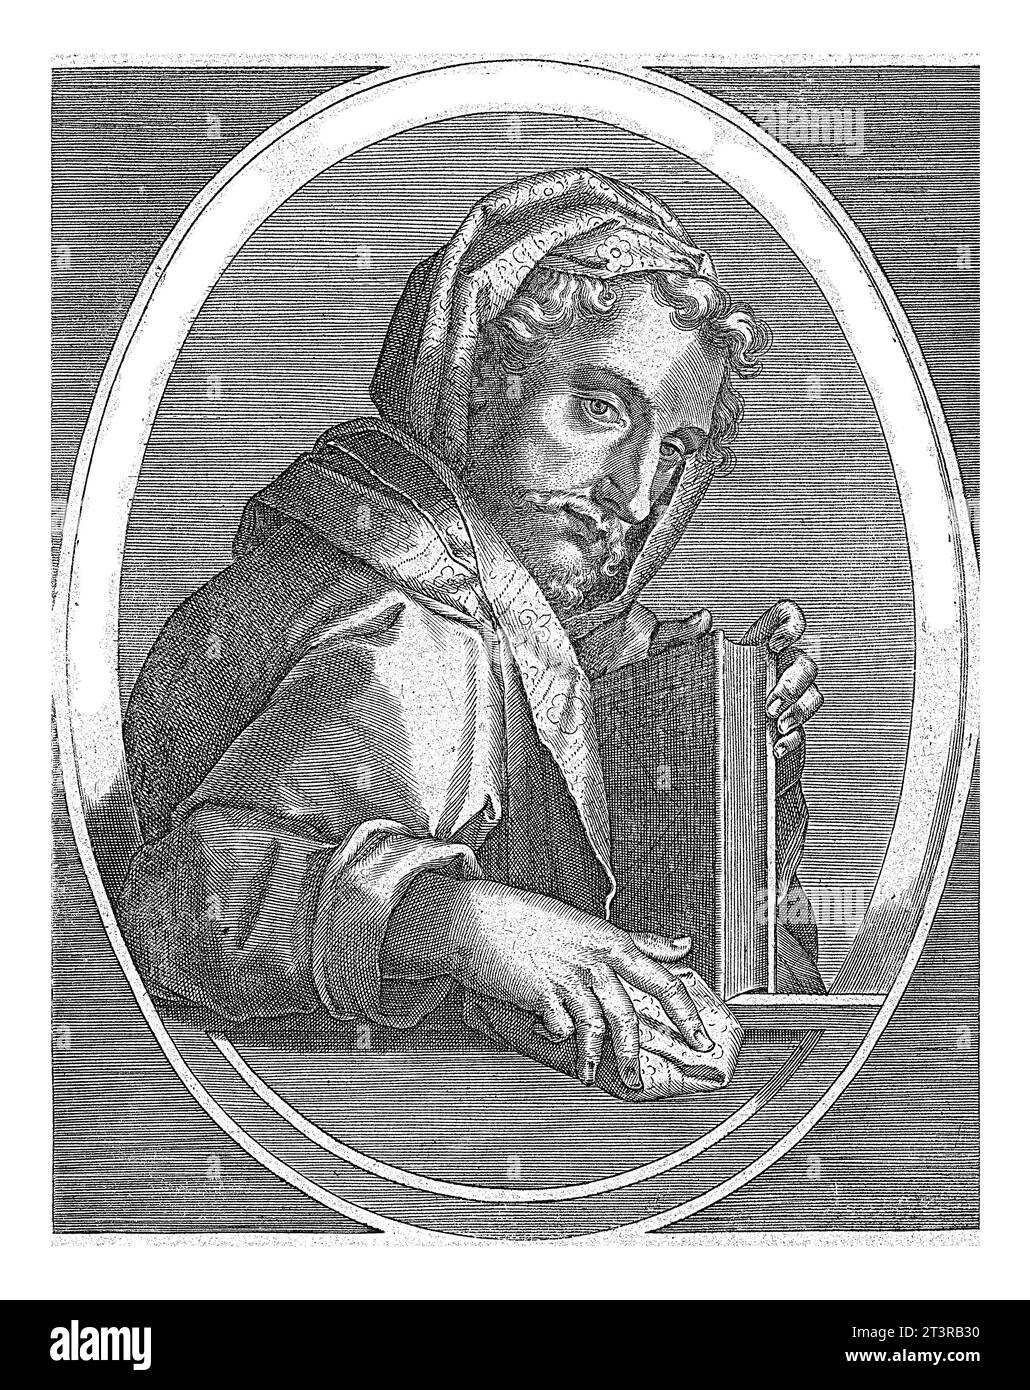 Zacharias, Cornelis Galle (i), dopo Jan van der Straet, 1613 il profeta Zacharias con un libro in mano, in ovale con iscrizione latina. Foto Stock